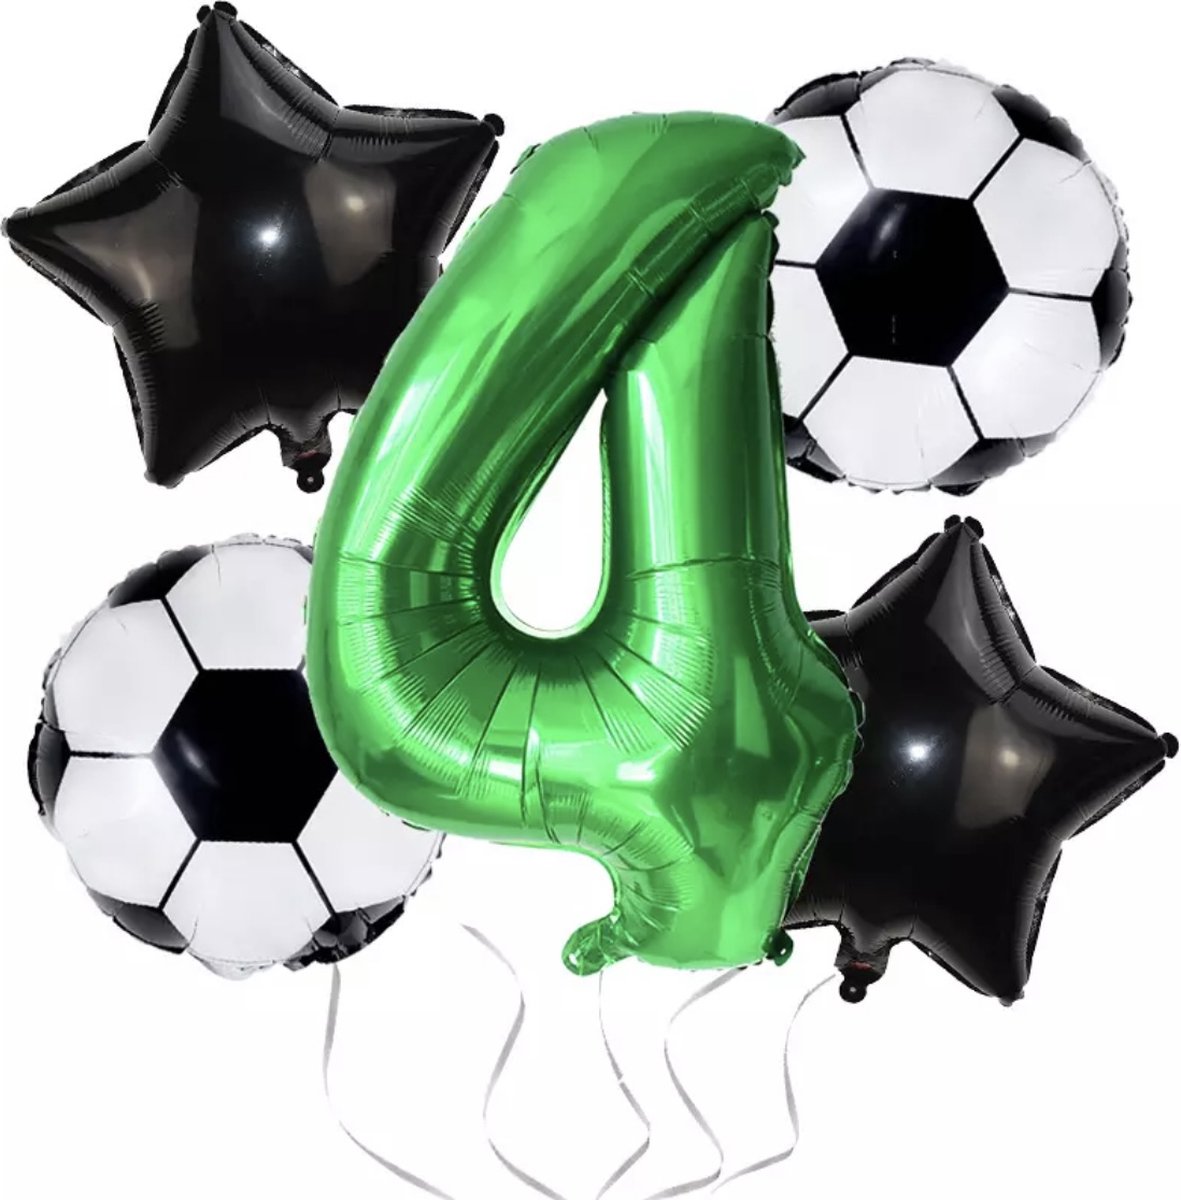 Voetbal Thema - Kinderverjaardag - Verjaardag - 4 jaar - Verjaardagsversiering - Versiering - Hoera 4 Jaar - Jongen - Heliumballon - Kinderverjaardag - Thema Feest - Kinderfeest - Versiering - Party - Decoratie - Ballonnen -